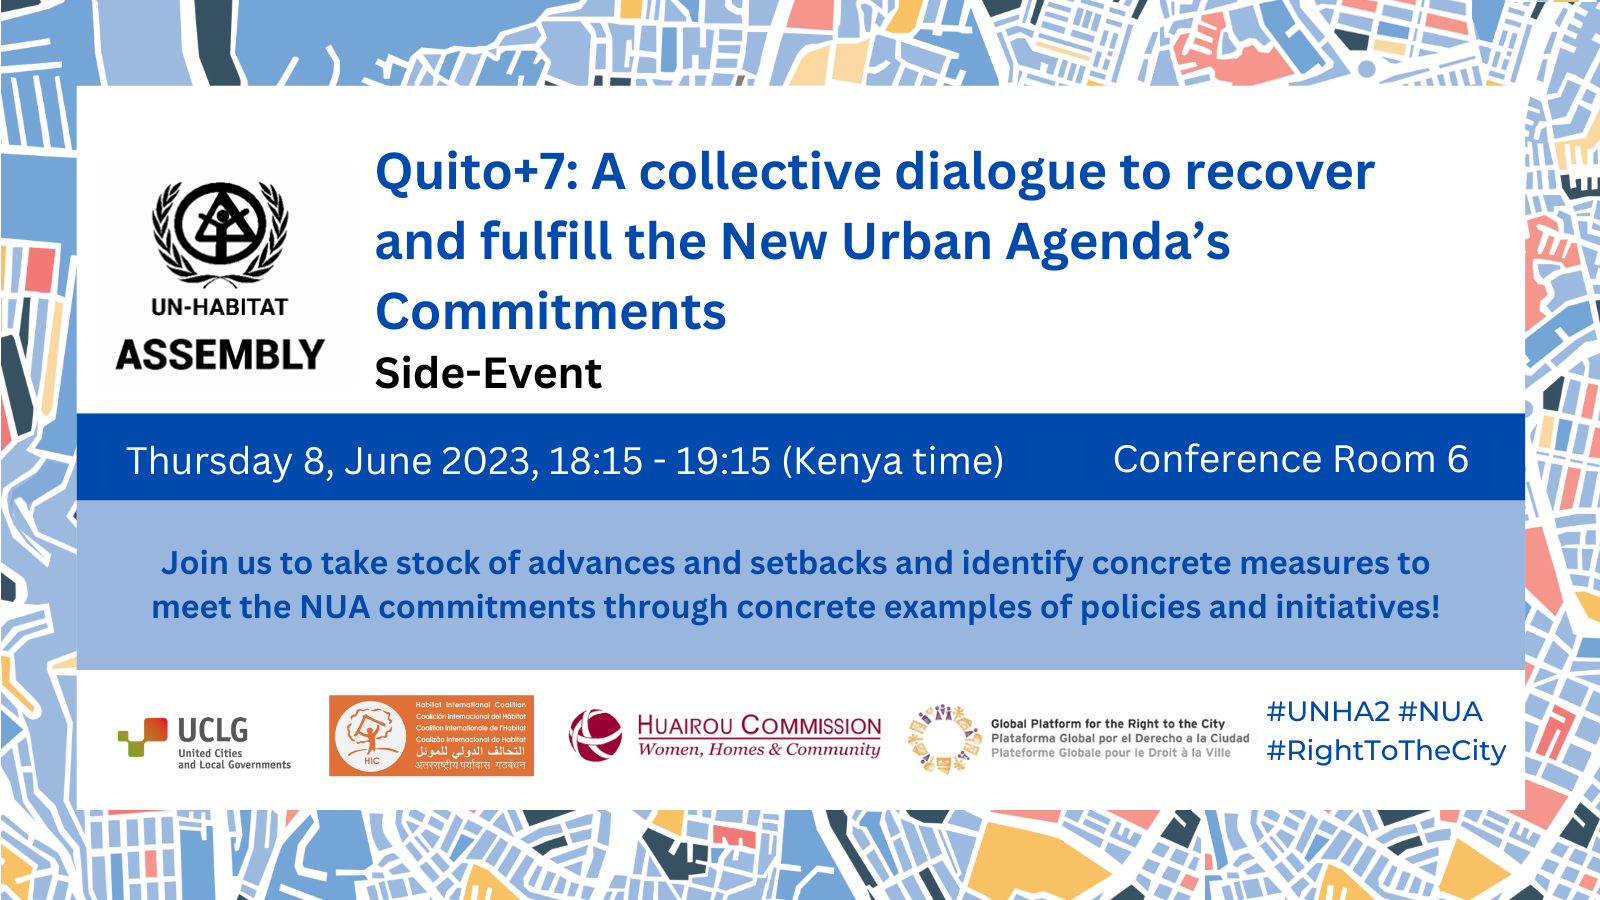 Événement parallèle de l’UNHA – Quito+7 : un dialogue collectif pour retrouver et remplir les engagements du nouvel agenda urbain